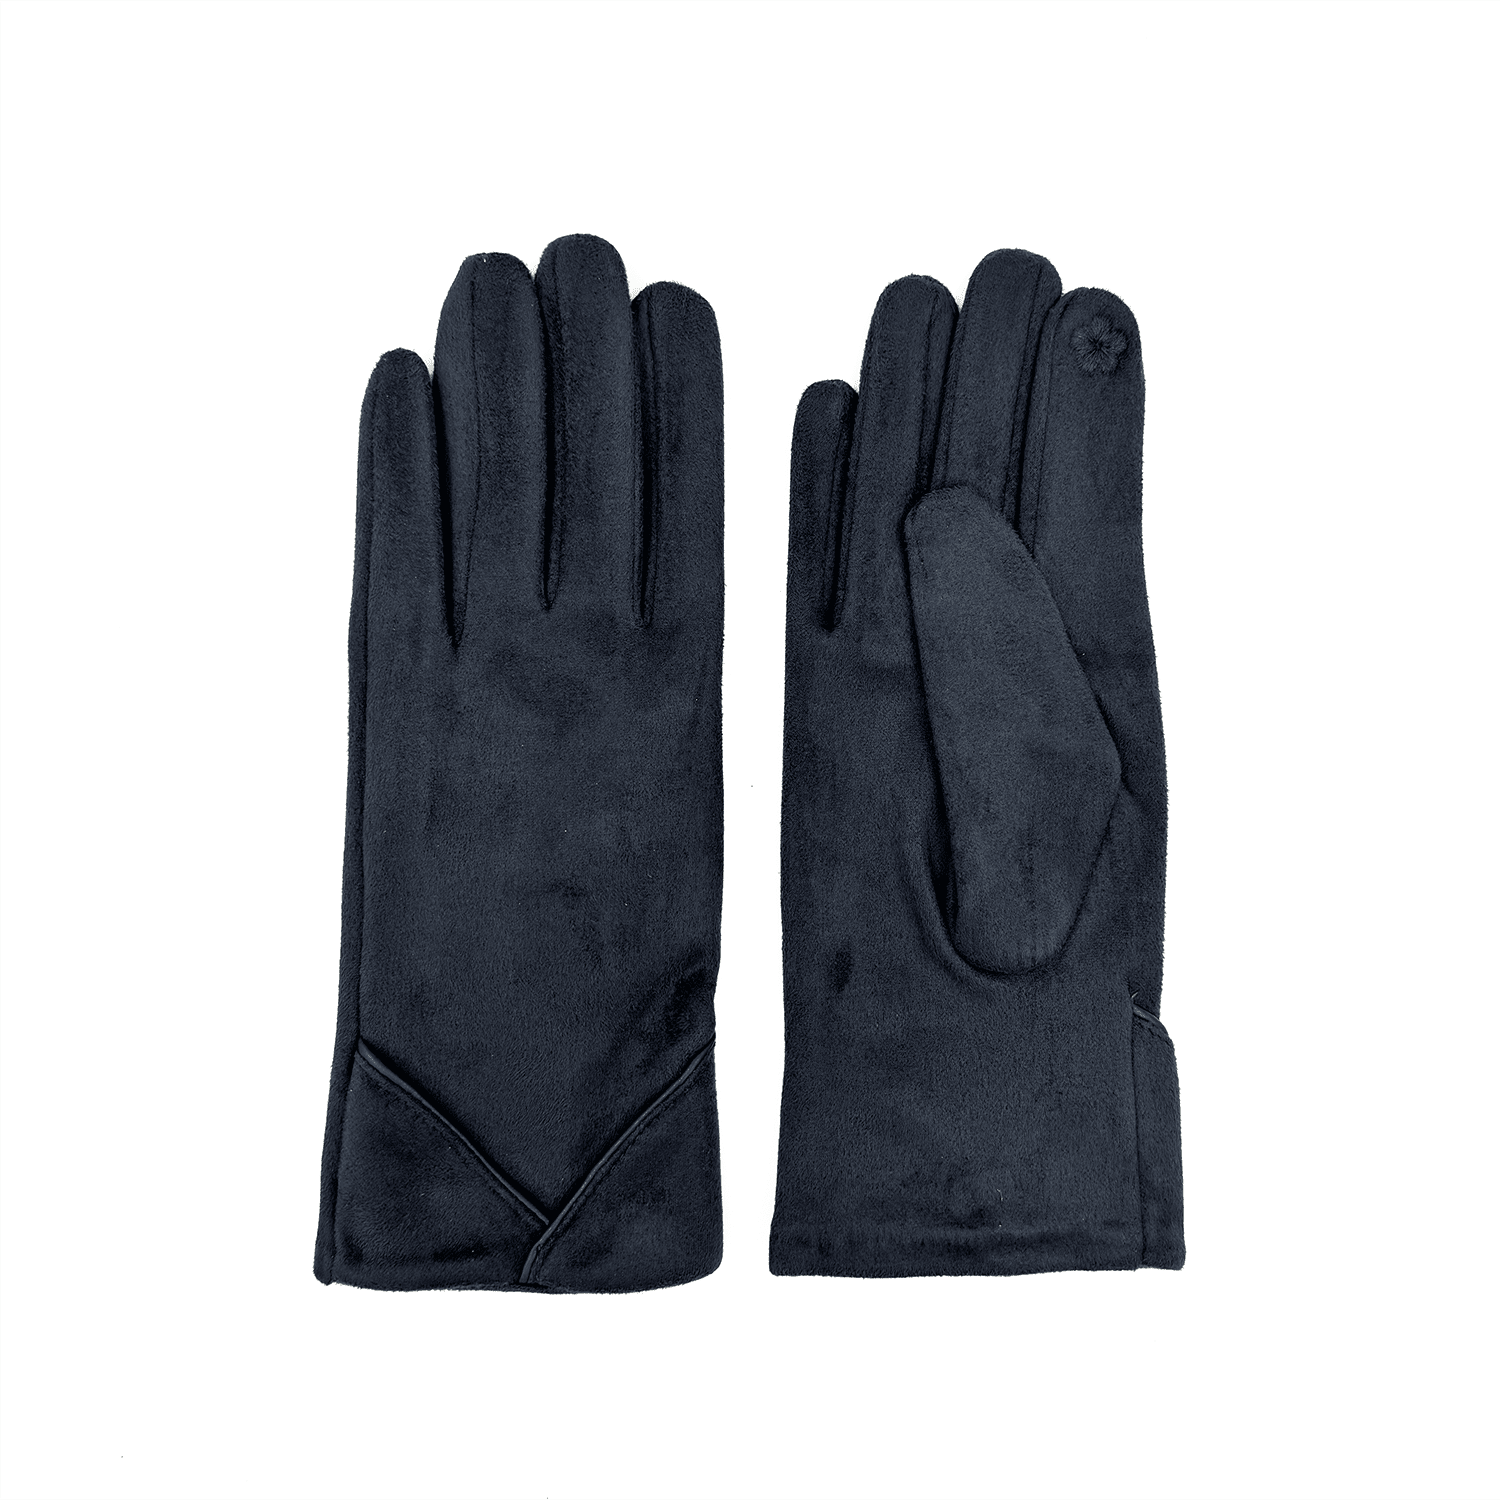  Diana & Co - Mănuși pentru femei - gri închis